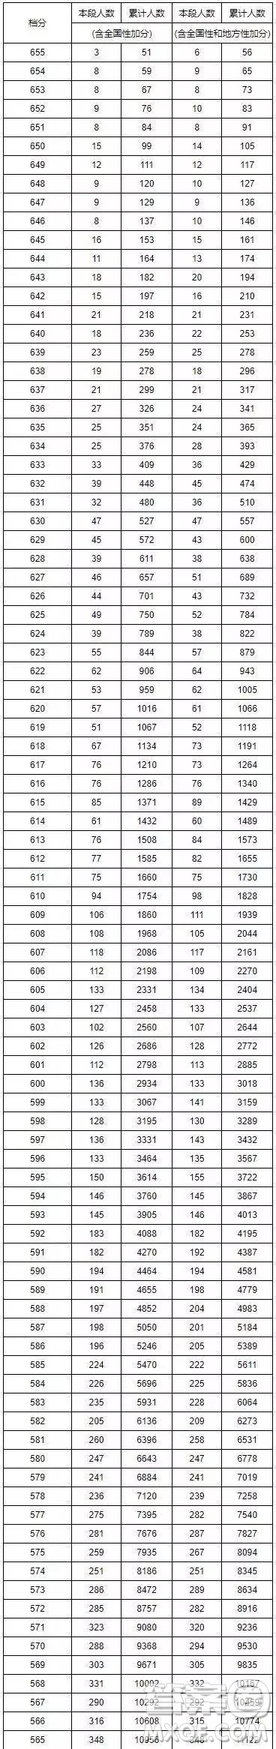 2019年湖南高考一分一段表 2019年湖南高考成绩分布情况